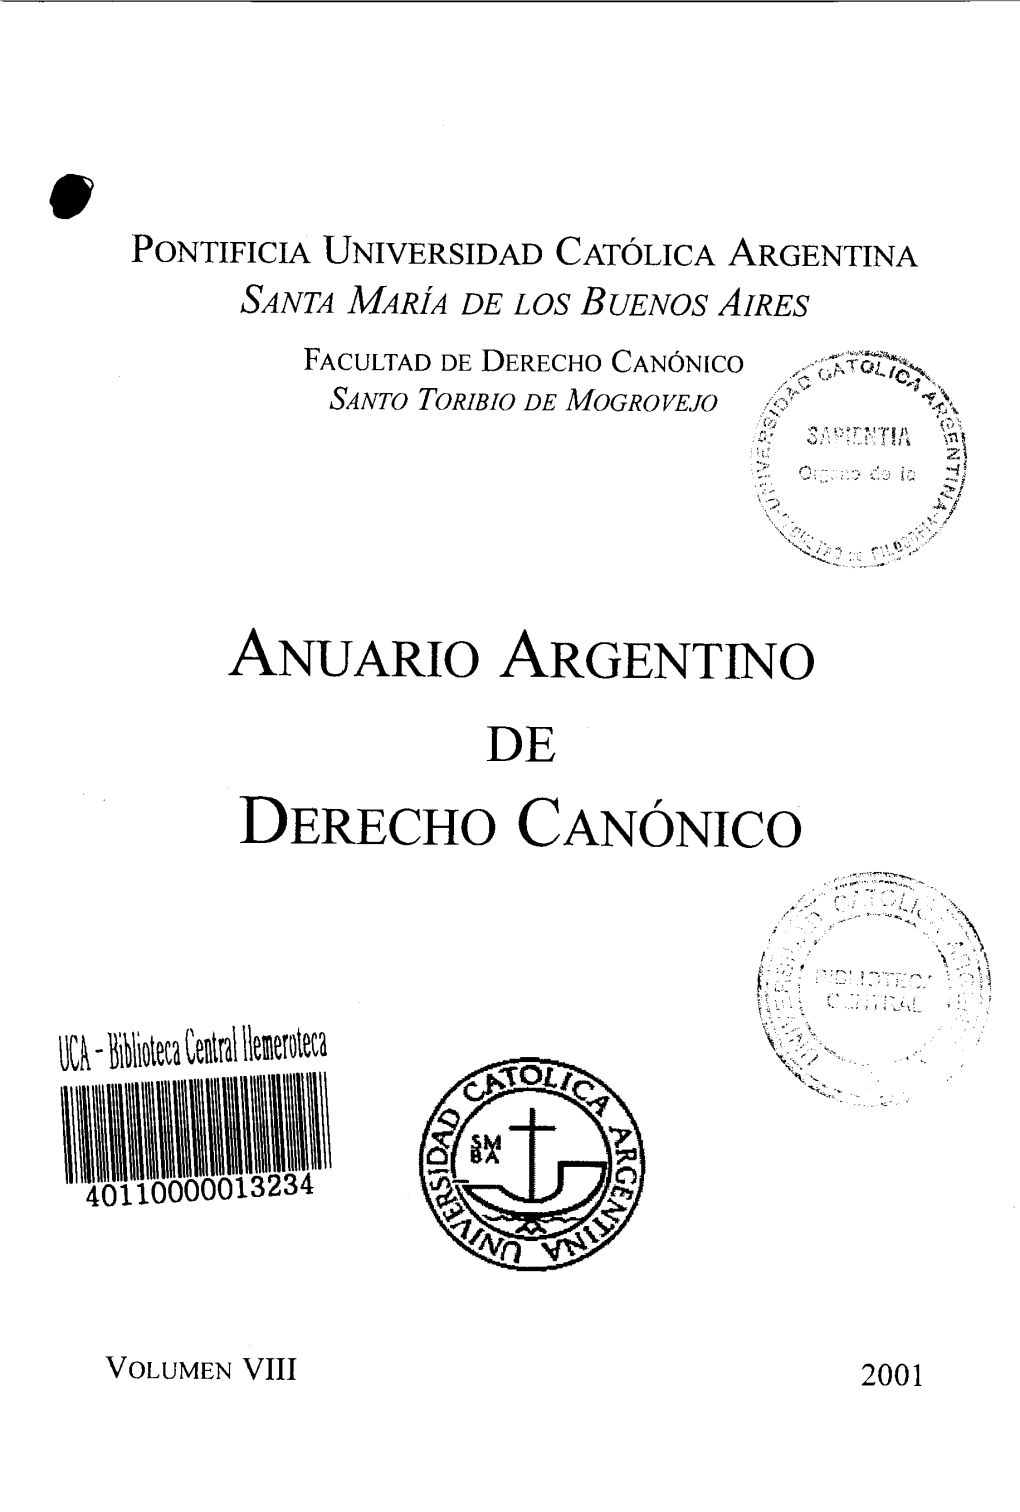 Anuario Argentino De Derecho Canónico, Vol. VIII, 2001